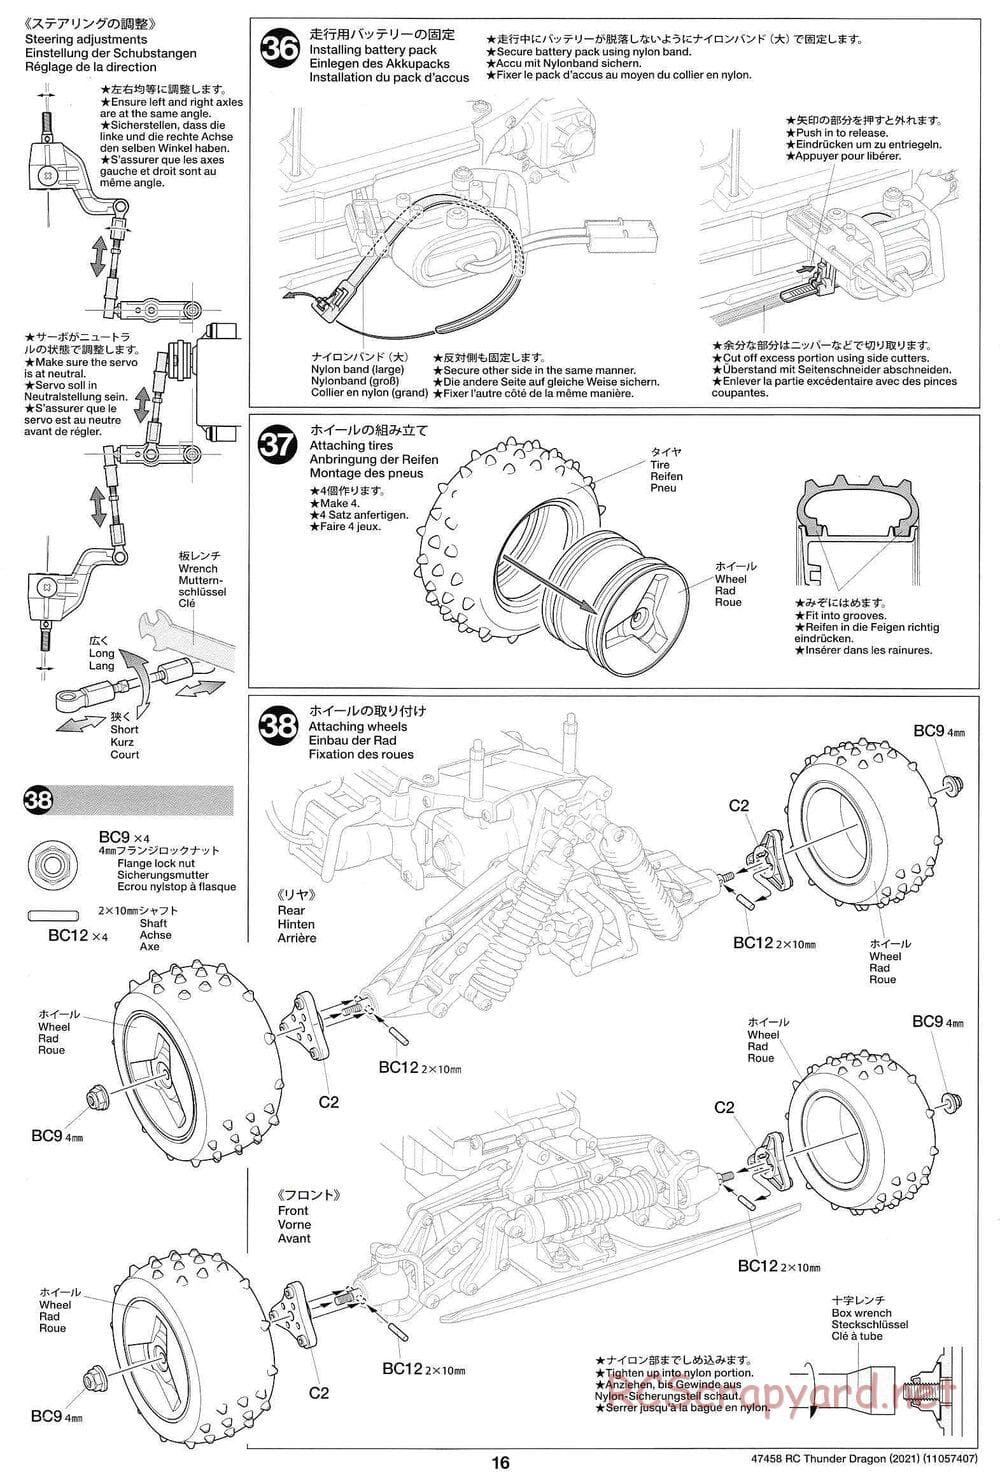 Tamiya - Thunder Dragon (2021) Chassis - Manual - Page 16